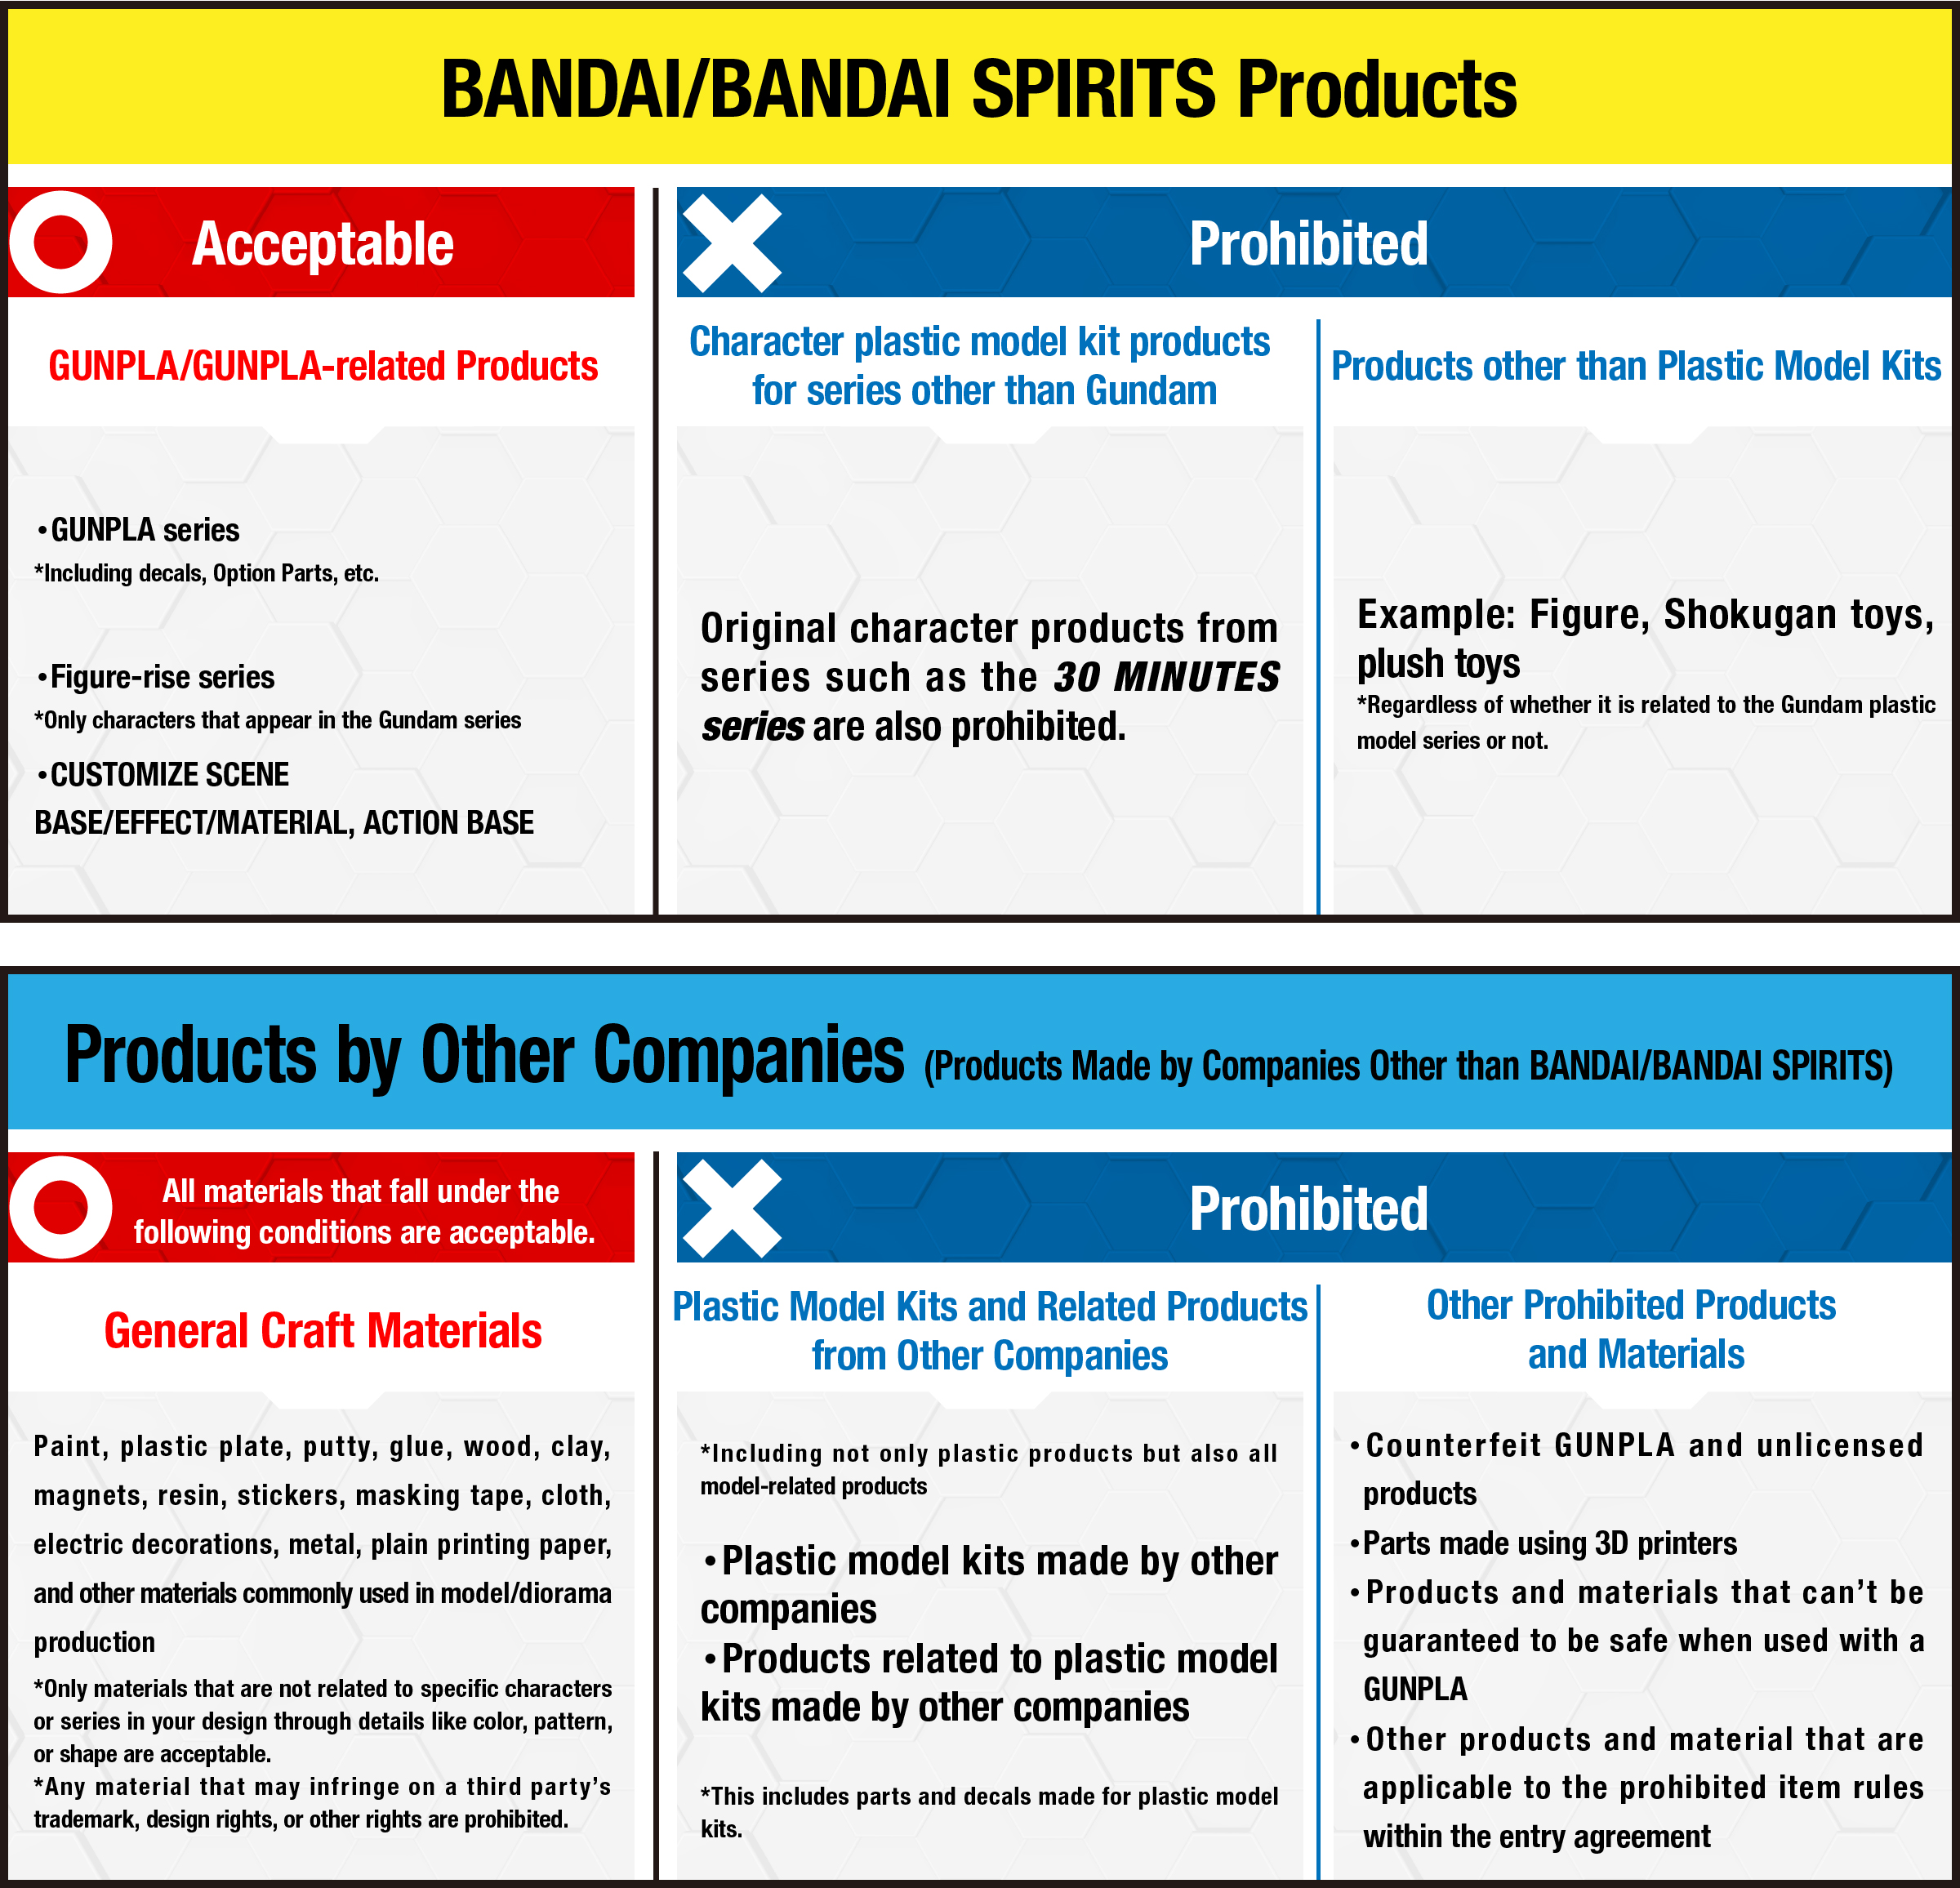 BANDAI/BANDAI SPIRITS Products